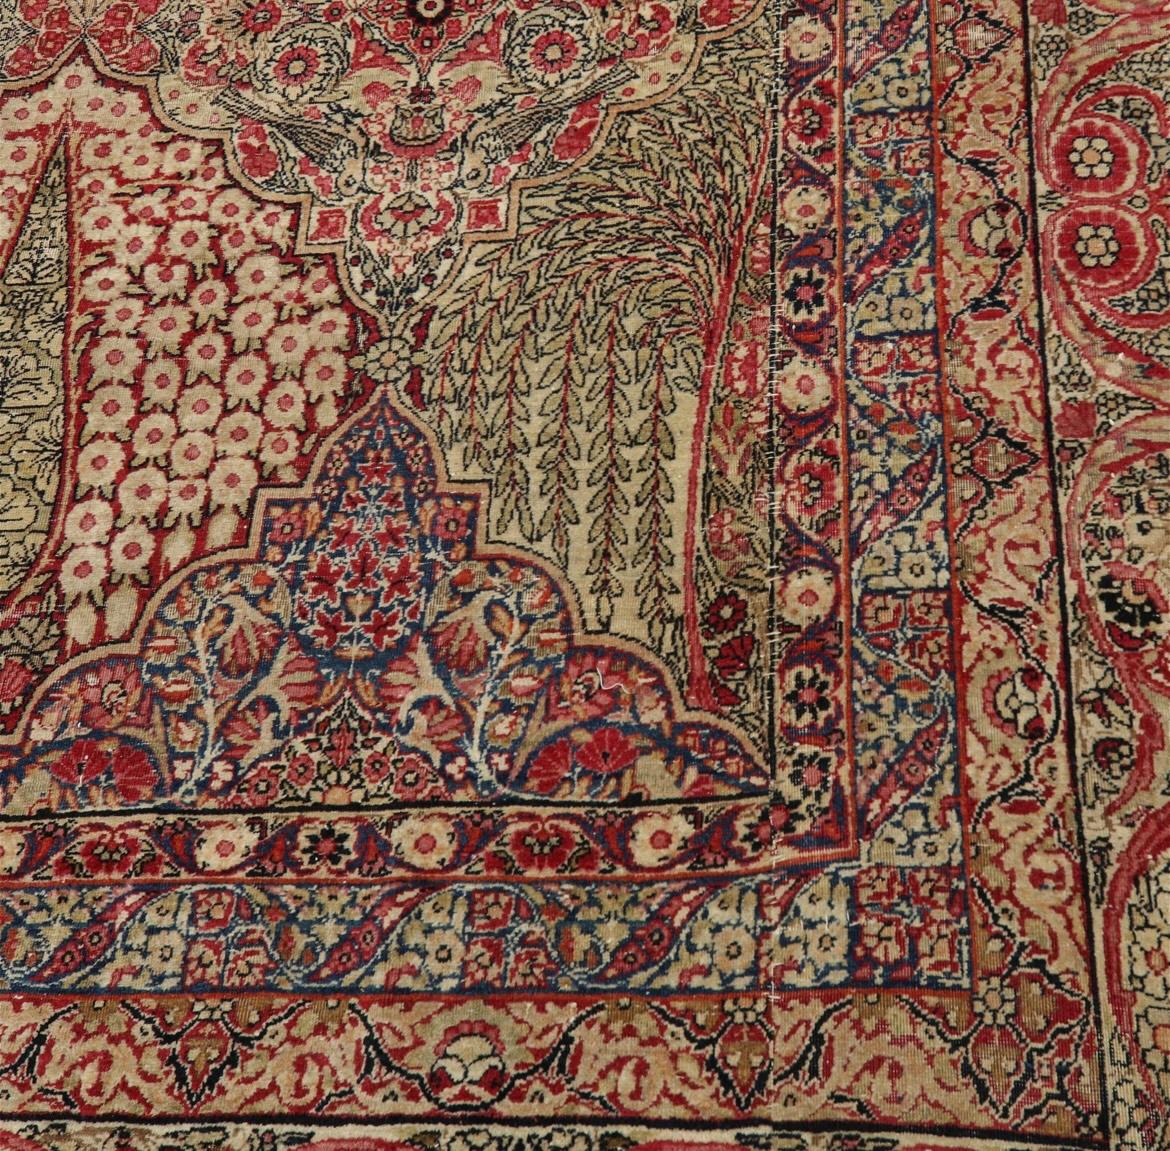 Sensational Palatial Antique Kerman Lavar Carpet / Rug, C.1915 For Sale 2